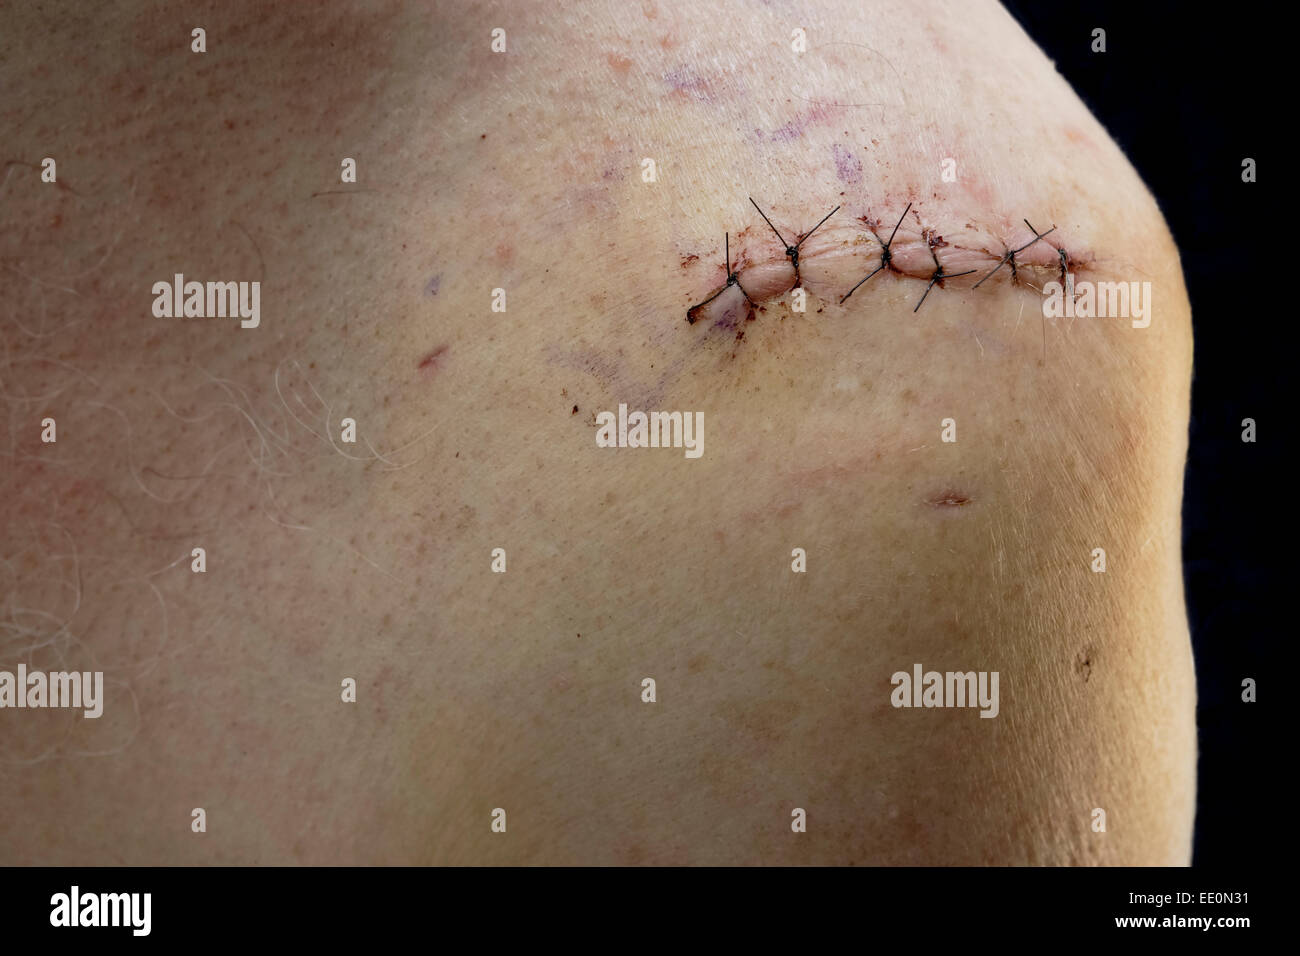 Chirurgischen Eingriff Wunde von Rotatorenmanschette Schulter Chirurgie-Victoria, British Columbia, Kanada. Hinweis-Digital composite Stockfoto